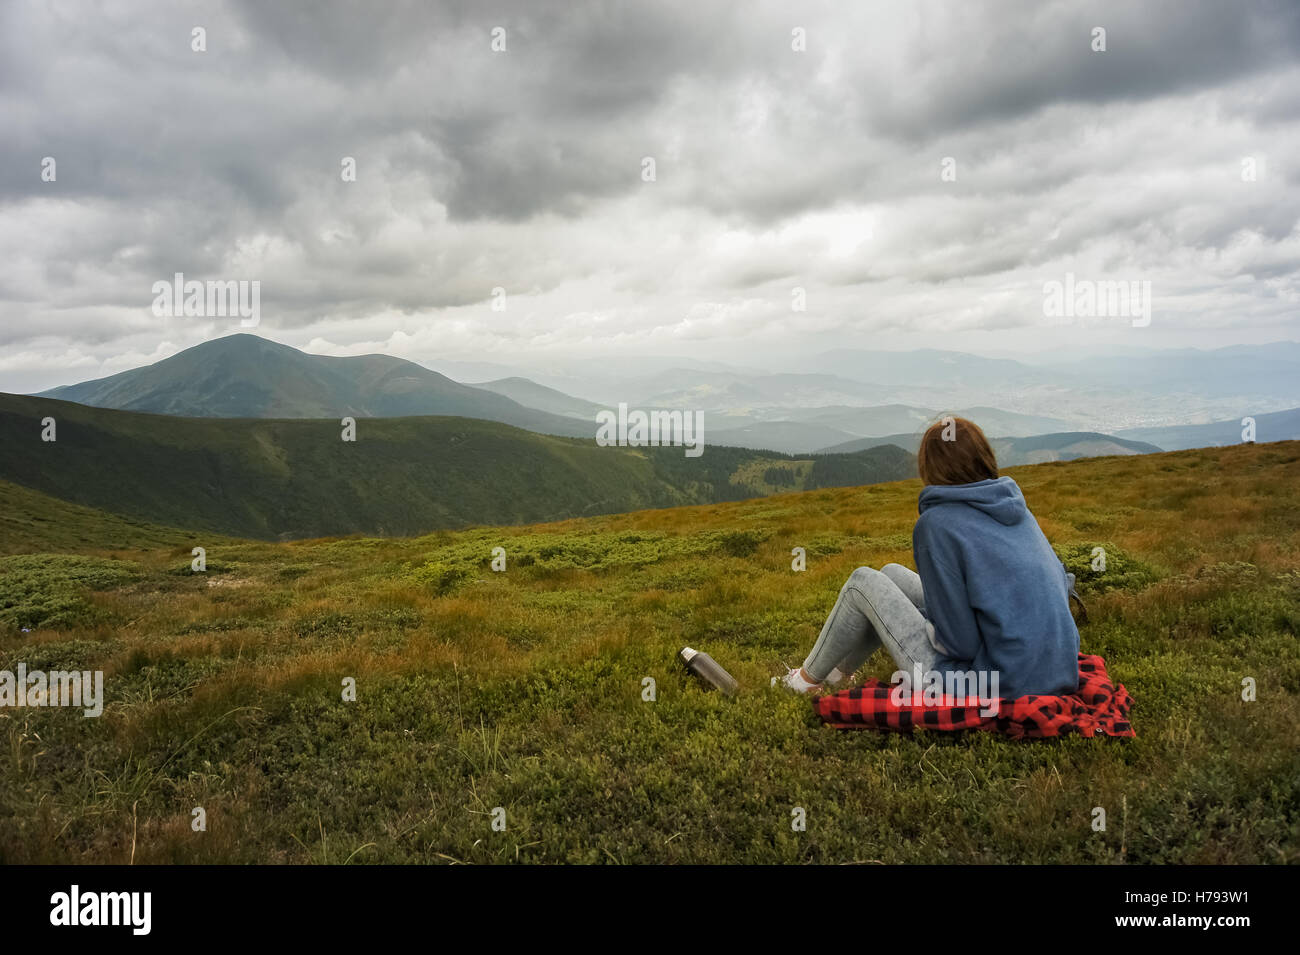 Ragazza di riposo in montagna. Persona di sesso femminile sedersi e godersi la splendida vista del paesaggio di montagna in un giorno nuvoloso Foto Stock